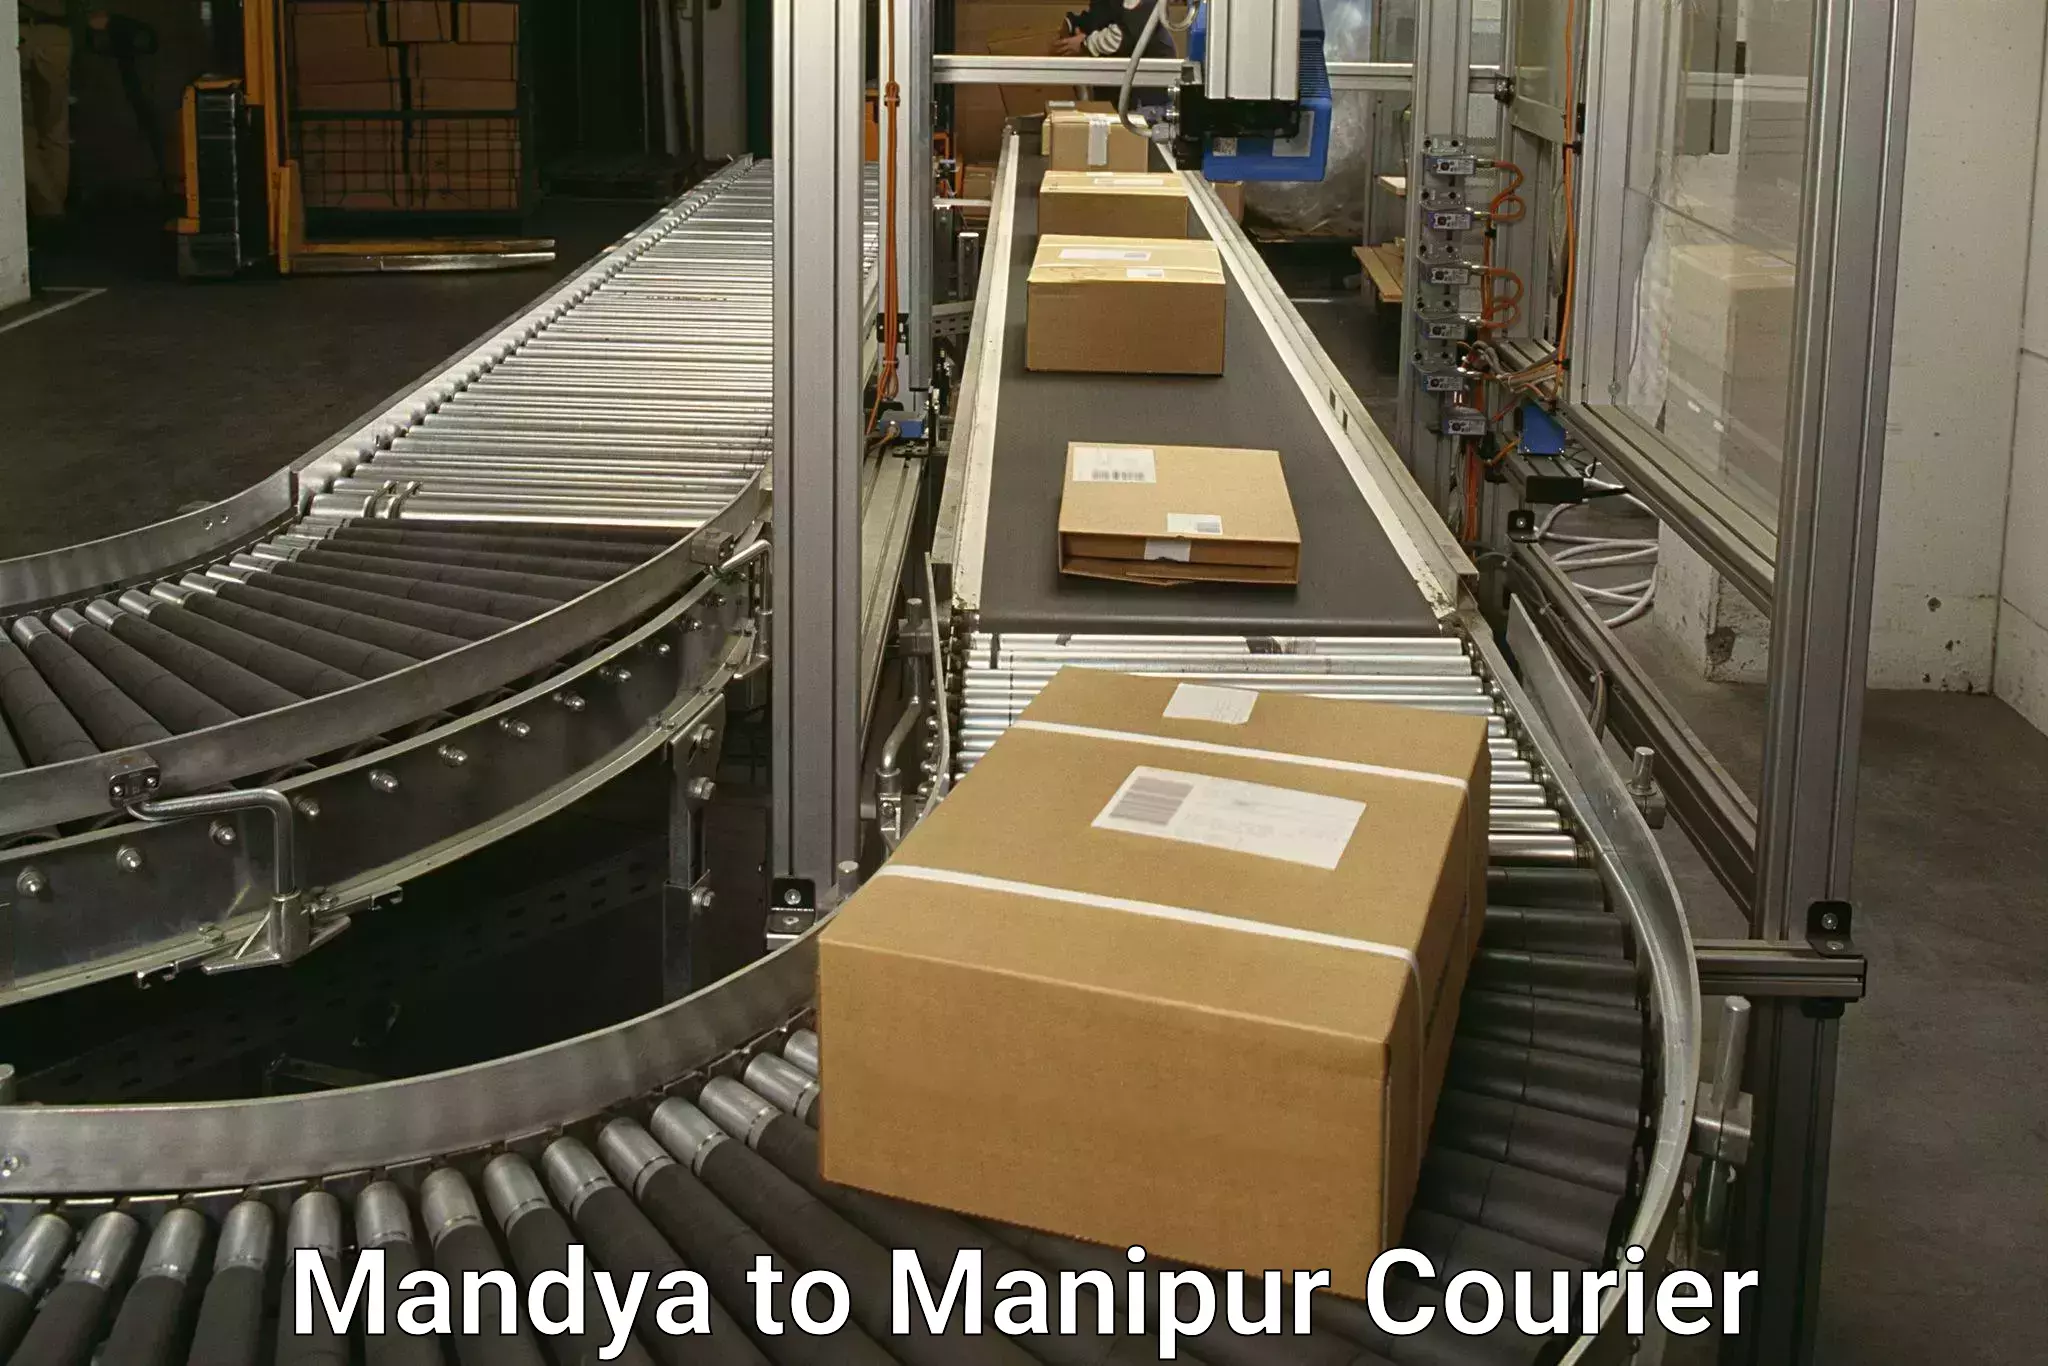 24/7 courier service Mandya to Churachandpur